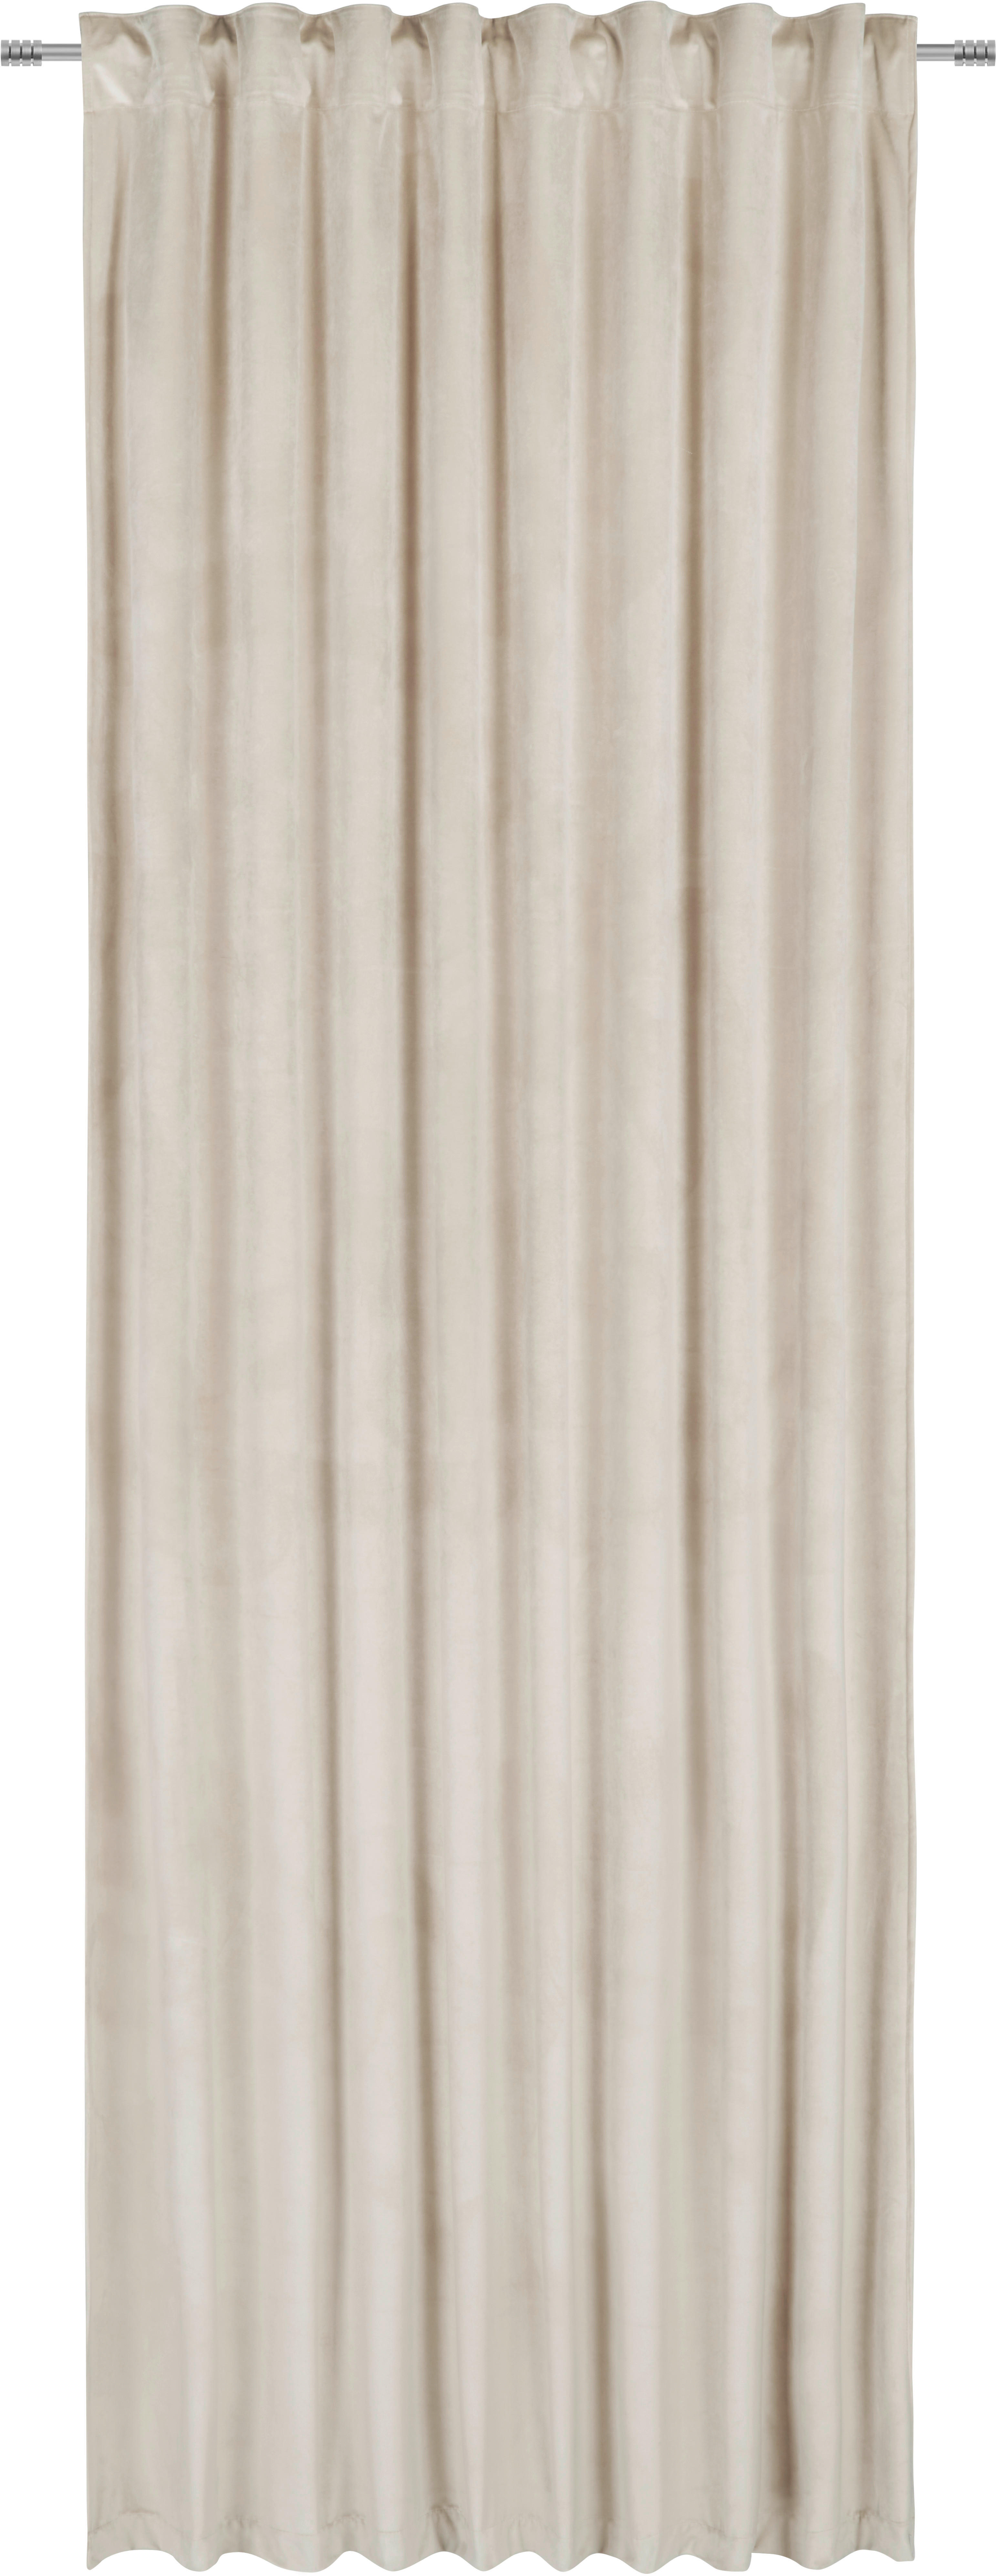 Fertigvorhang blickdicht  - Beige, KONVENTIONELL, Textil (135/255cm) - Esposa